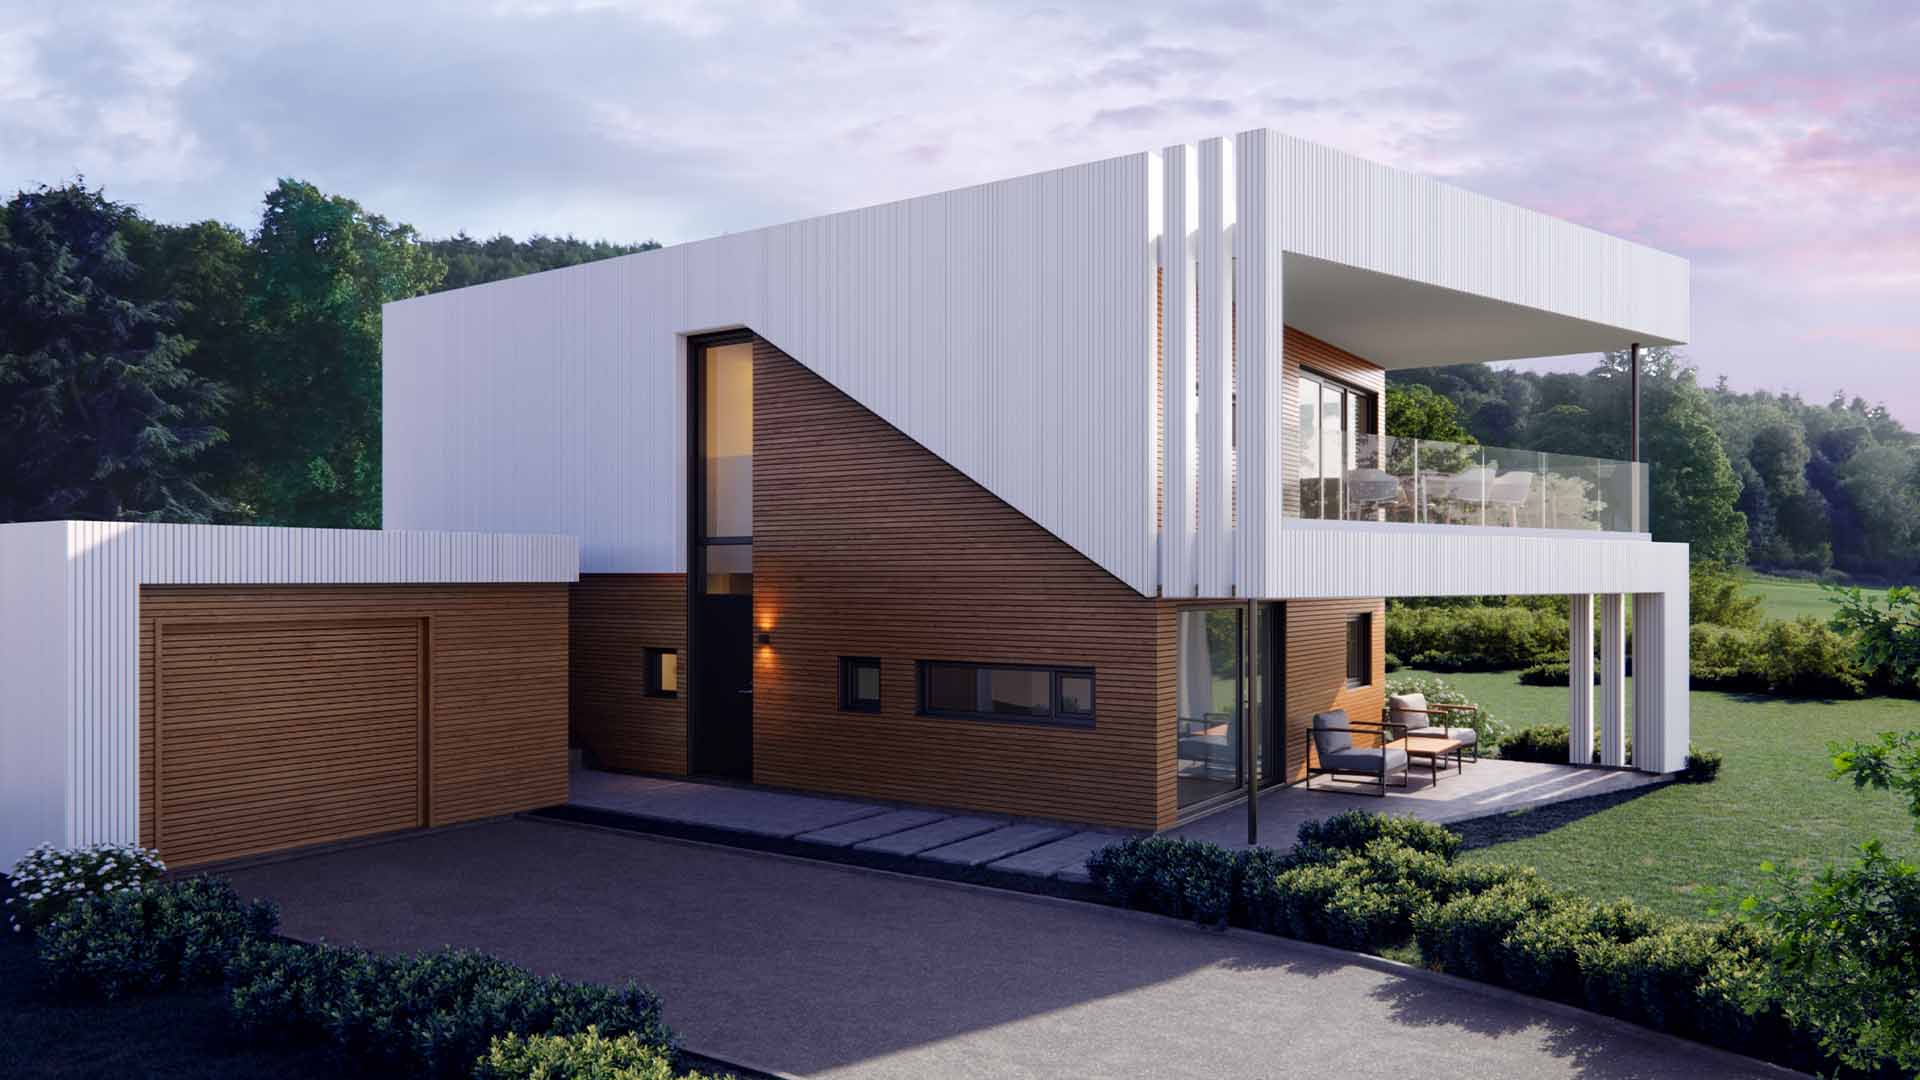 Mesterhus Form 1.0 er en innovativ boligmodell som møter dagens marked og etterspørsel for moderne og kostnadseffektive løsninger. Med sitt fleksible og arealeffektive design, passer Form 1.0 perfekt på små og smale tomter.